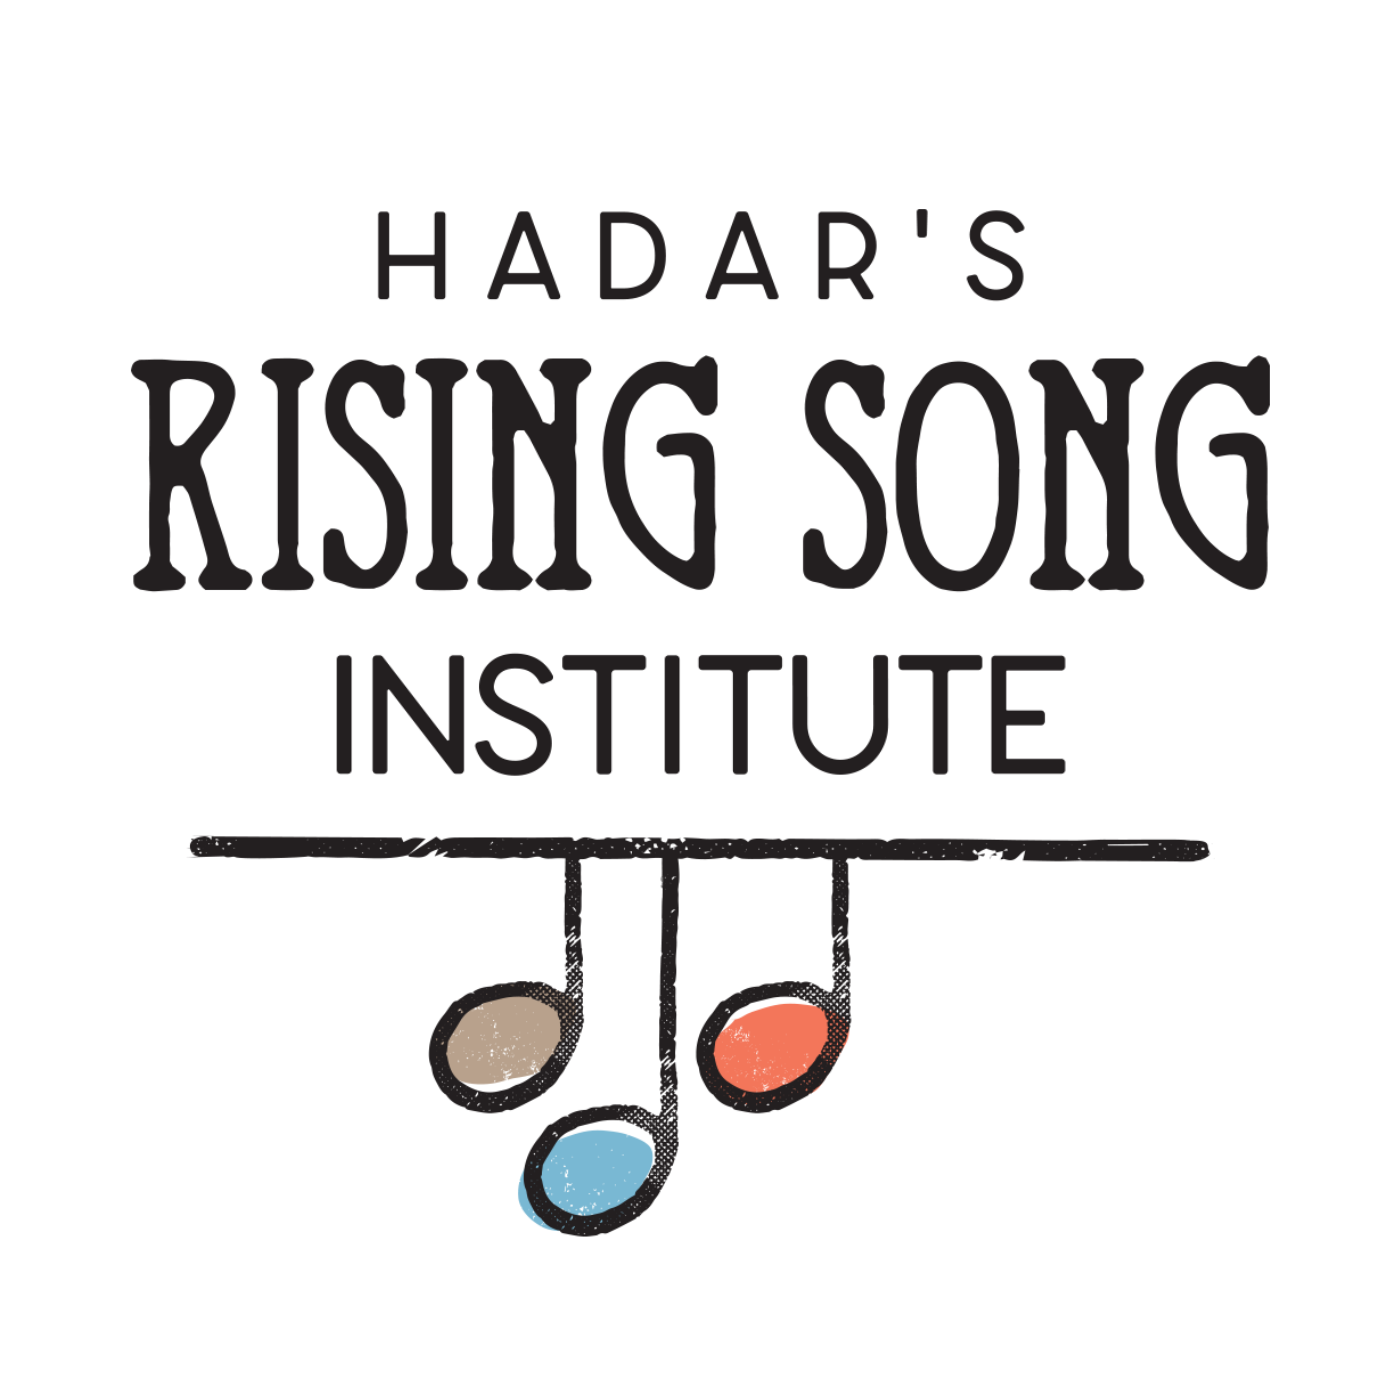 Hadar Institute logo